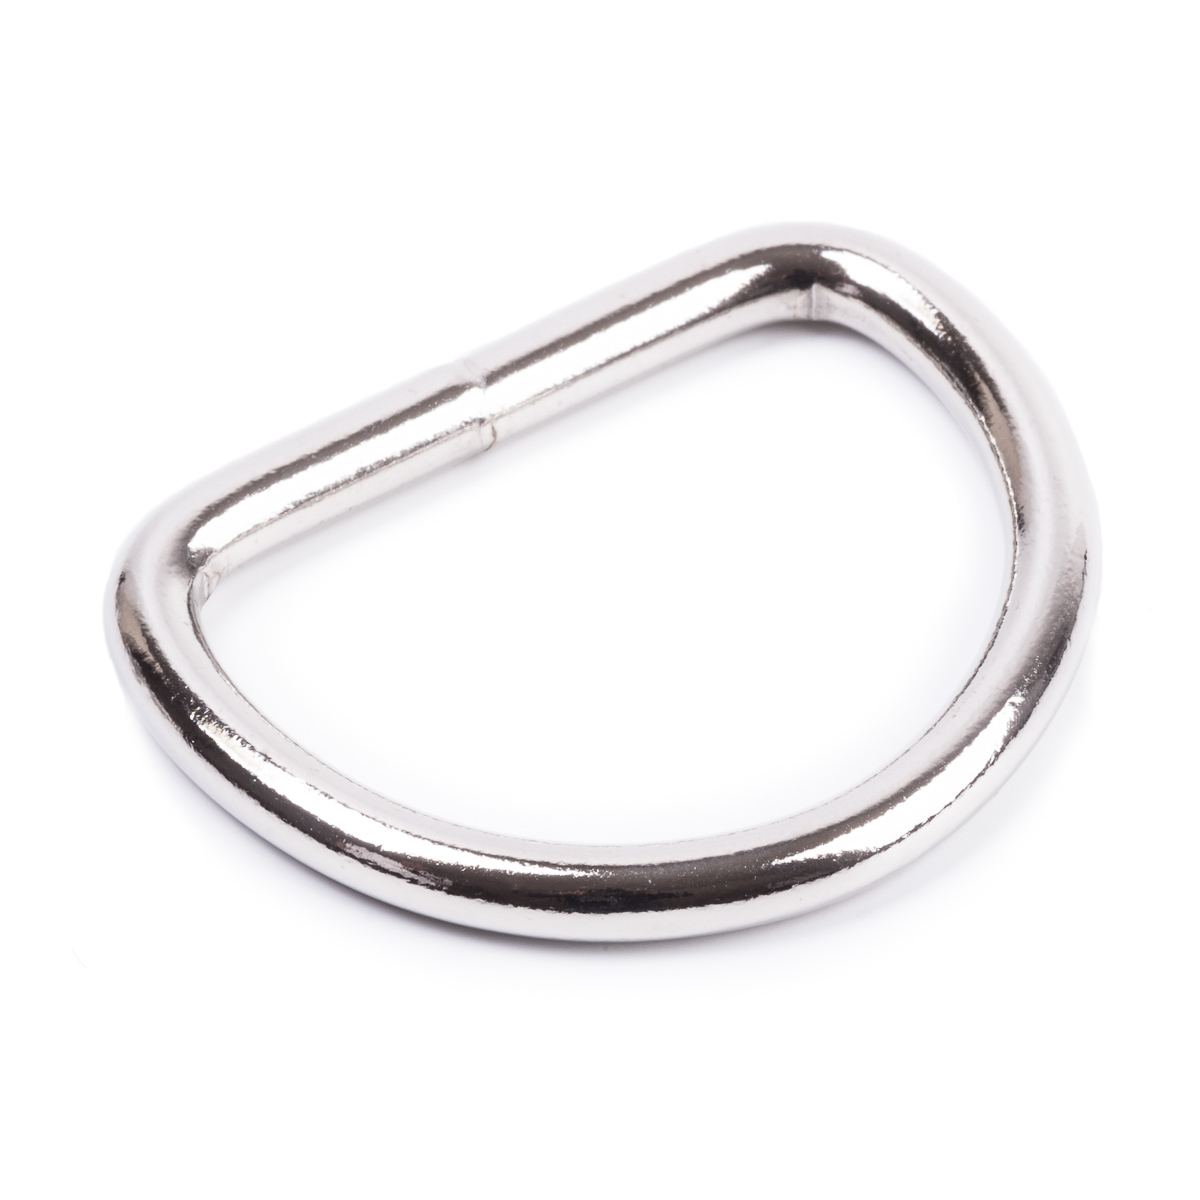 D-Ringe 40mm x30x4,0mm Stahl Gold vermessingt Halbrund Ring D Ringe D-Ring 10St 